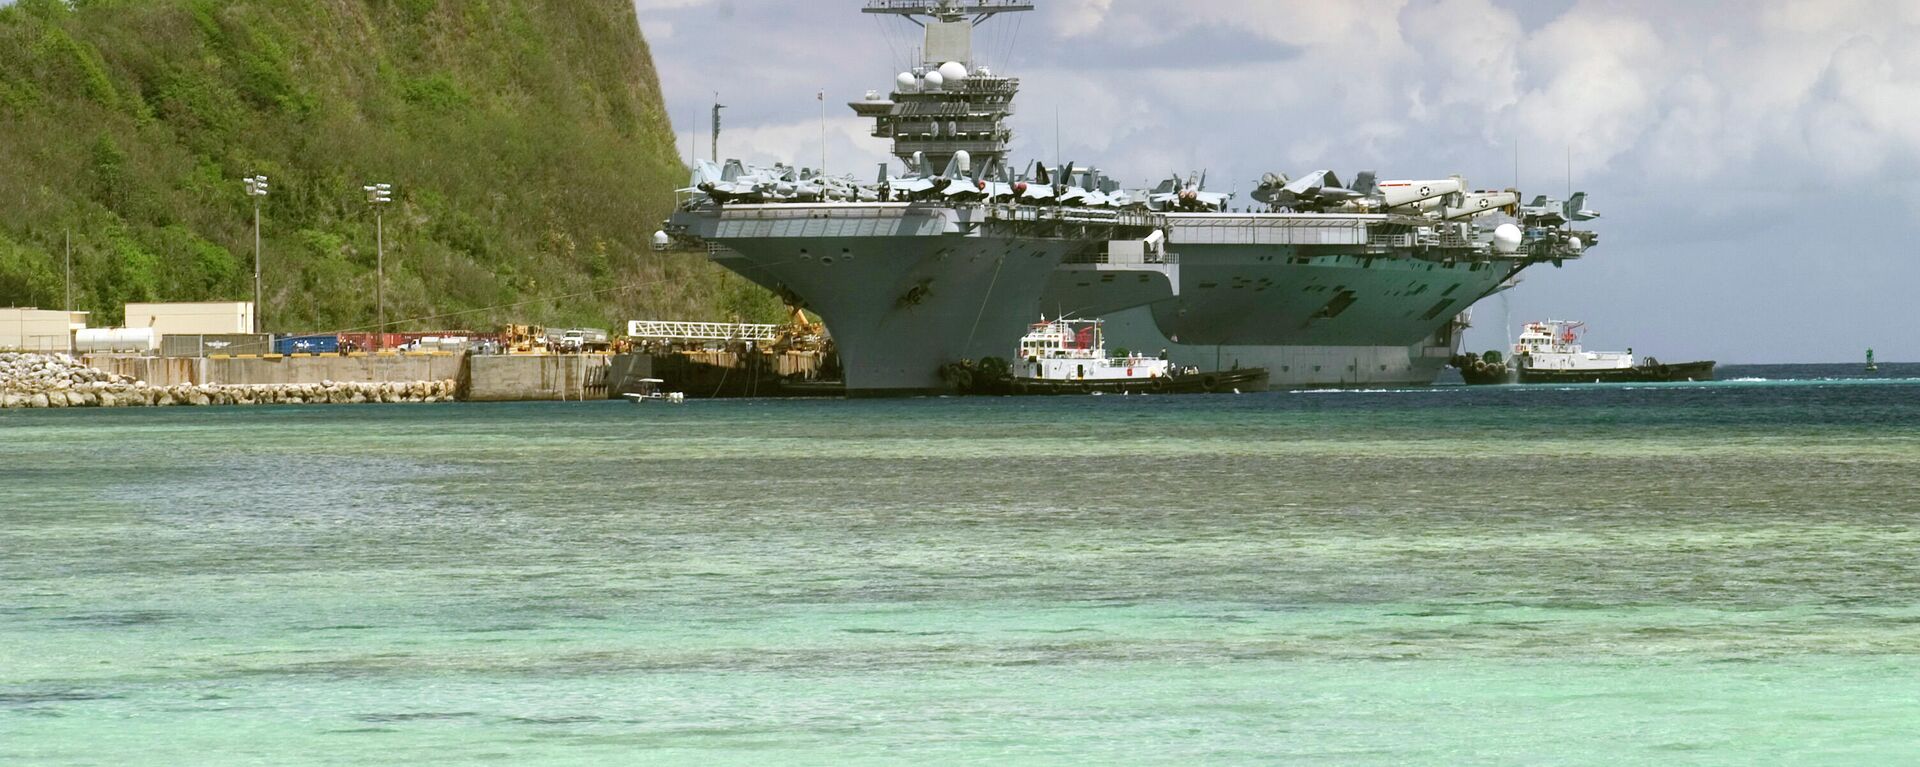 El portaaviones de propulsión nuclear USS Nimitz (CVN 68) atraca en el puerto de Apra, Guam - Sputnik Mundo, 1920, 01.12.2021